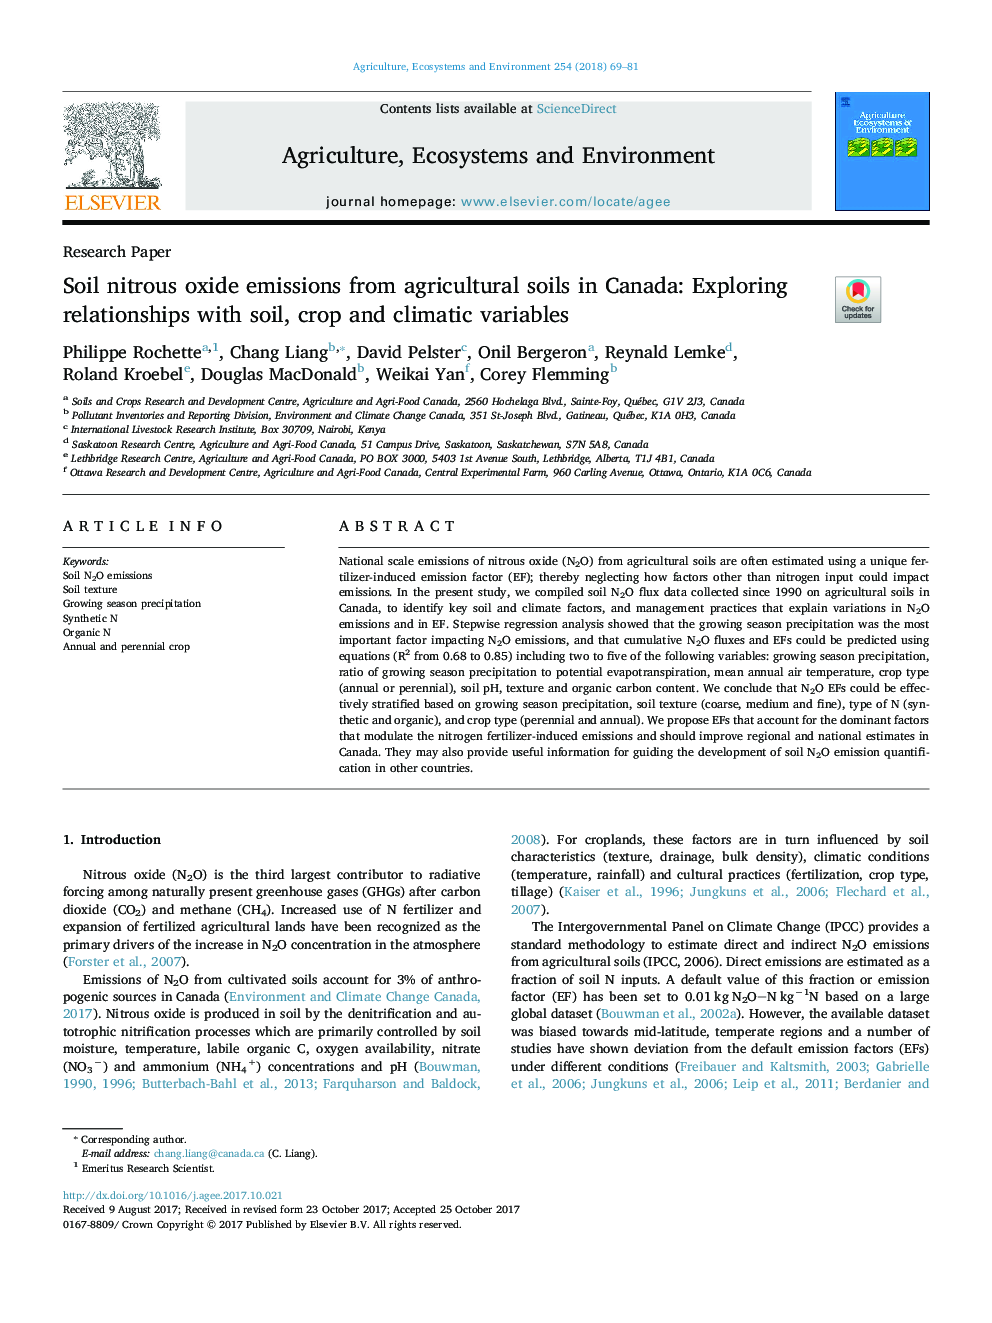 انتشار اکسید نیتروژن خاک از خاک های کشاورزی در کانادا: بررسی رابطه با خاک، متغیرهای محصول و اقلیمی 